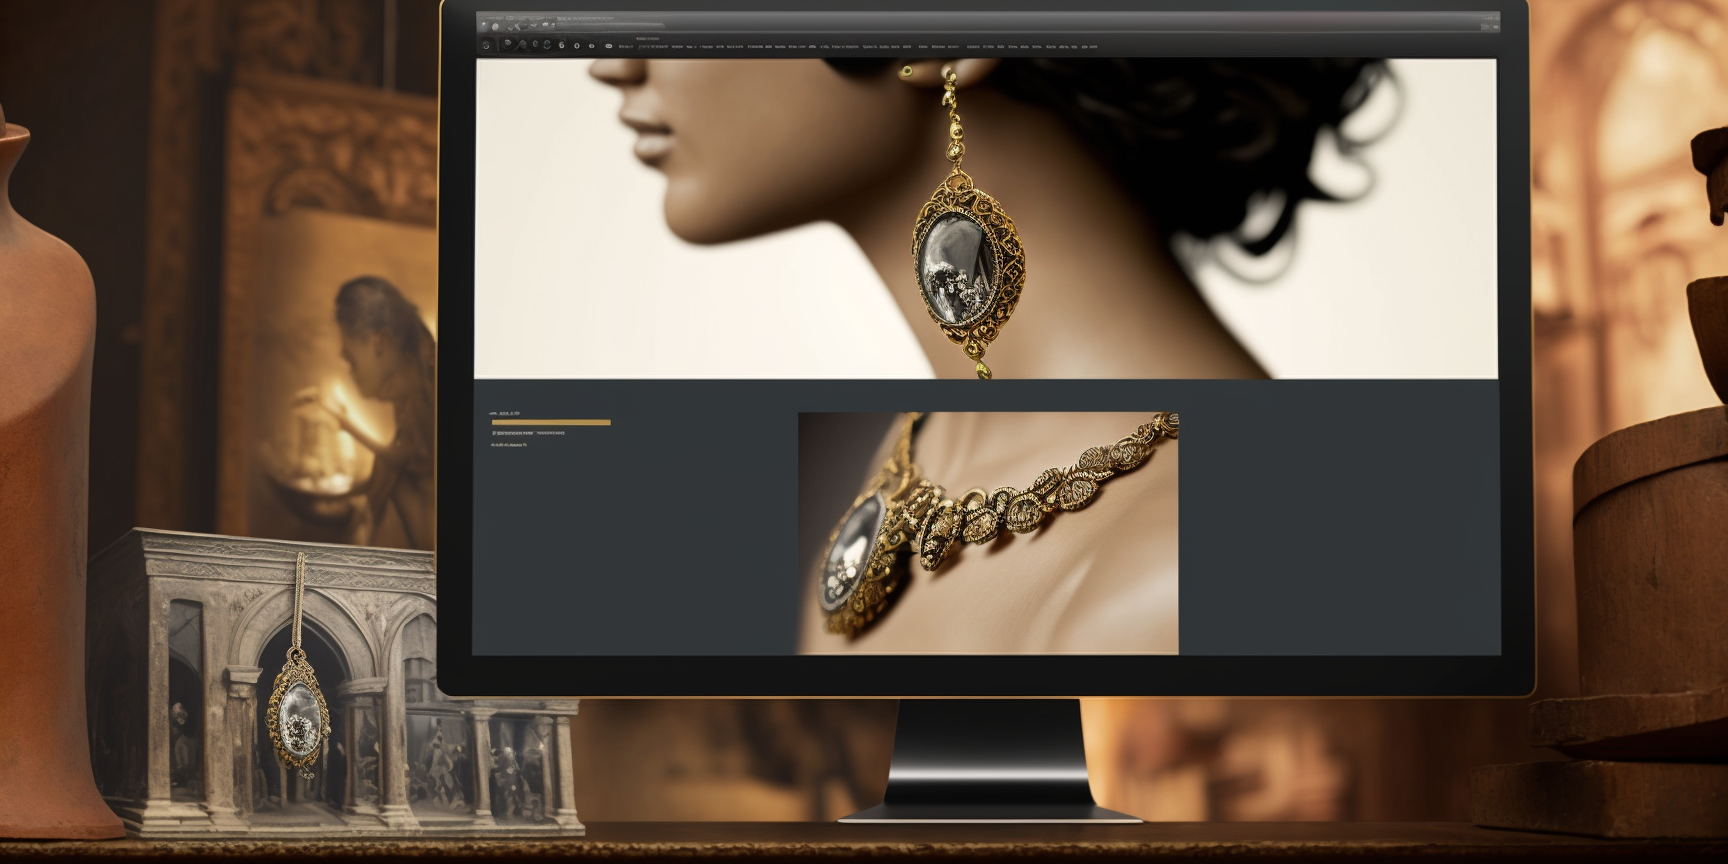 Sälja smycken på nätet i egen webshop